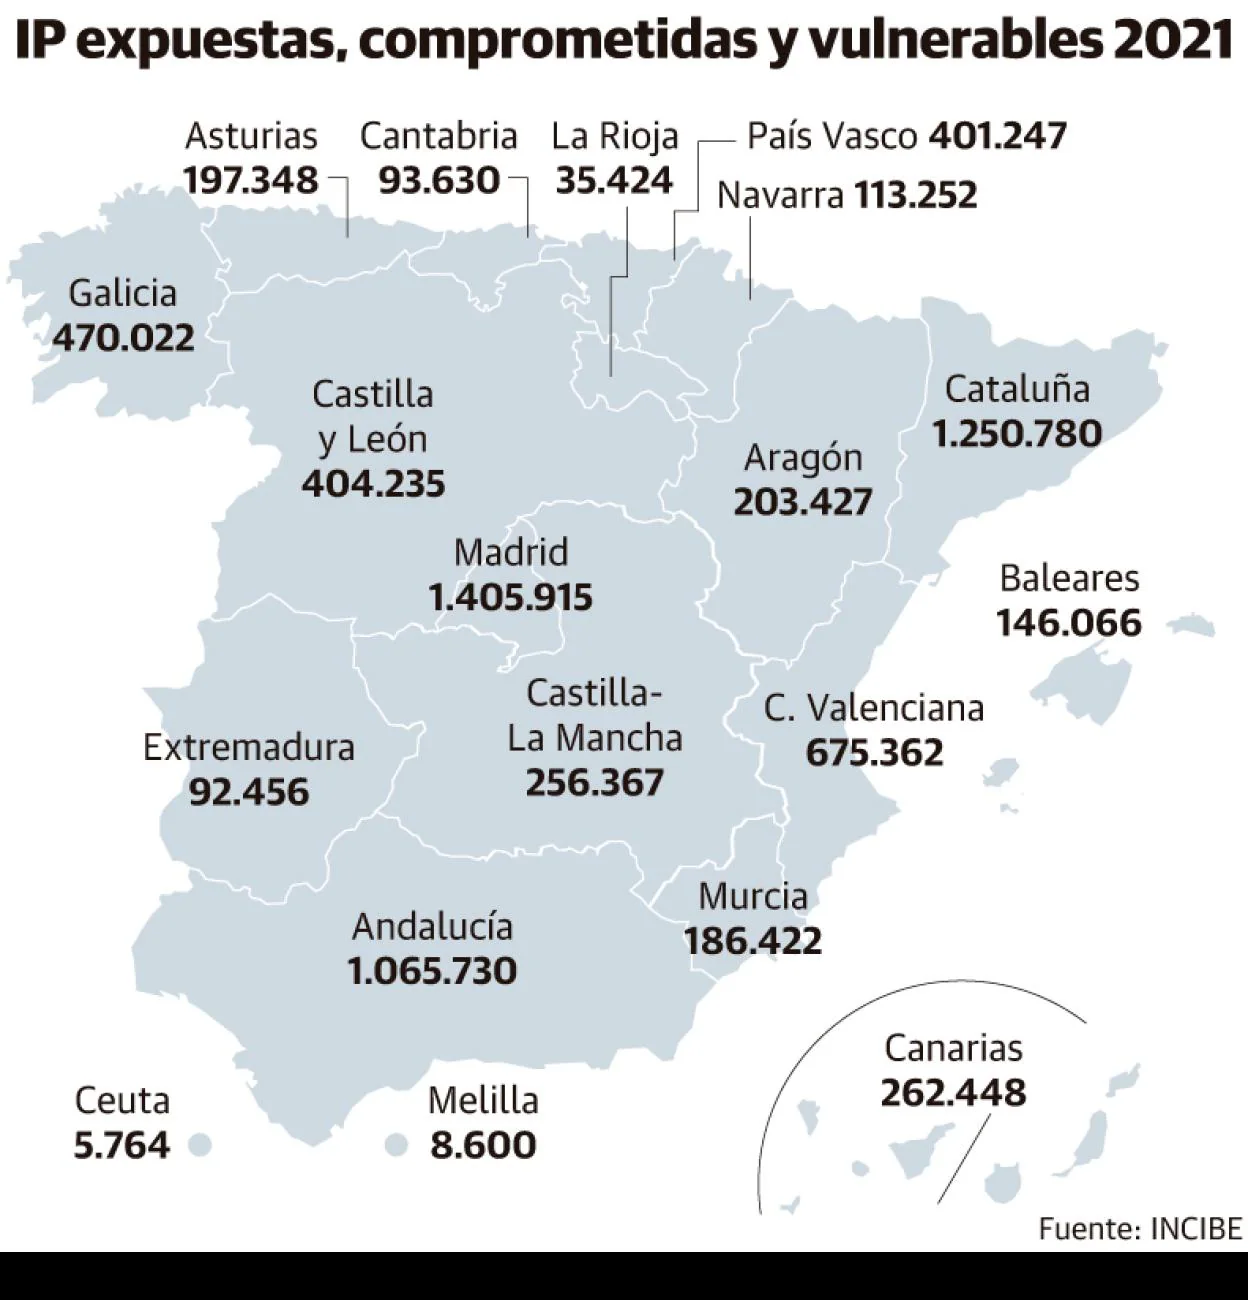 Los ciberataques se disparan en Asturias: casi 200.000 intentos de pirateo informático en 2021